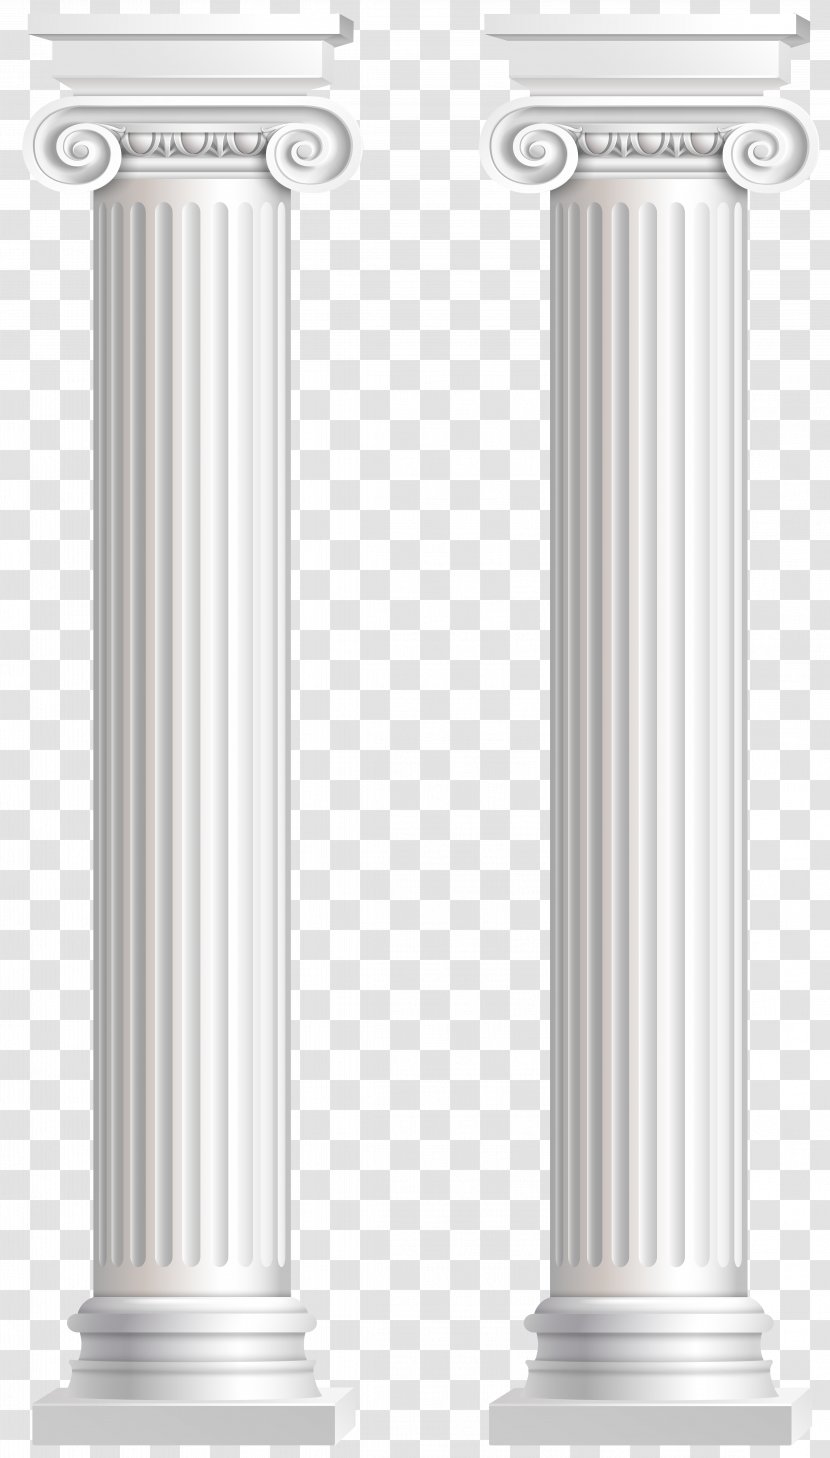 Product Cylinder Design - Column - Pillars Transparent Clip Art Image Transparent PNG